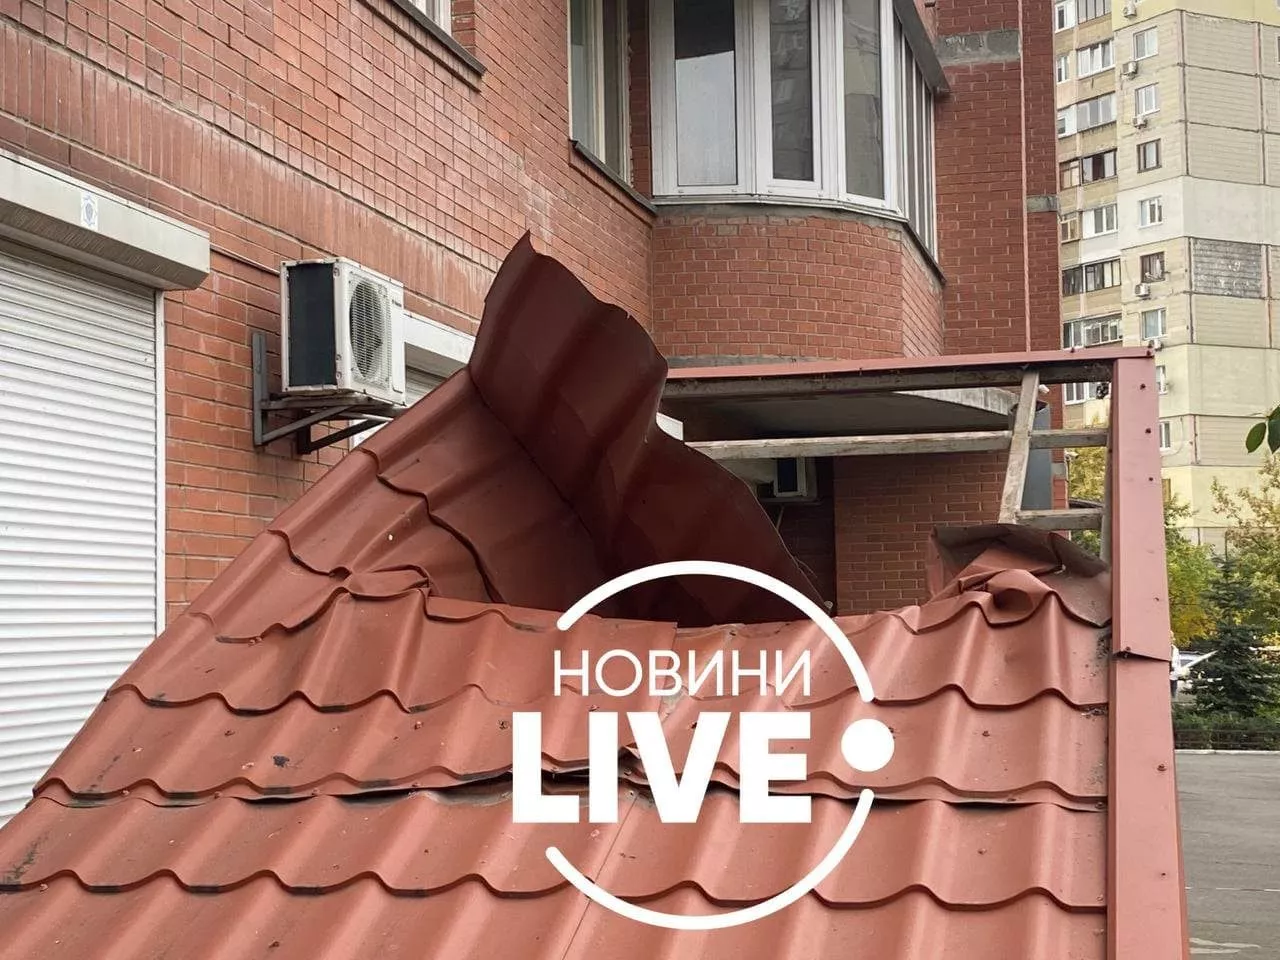 В Дарницком районе столицы из окна многоэтажки выпала женщина / Фото: Новини LIVE